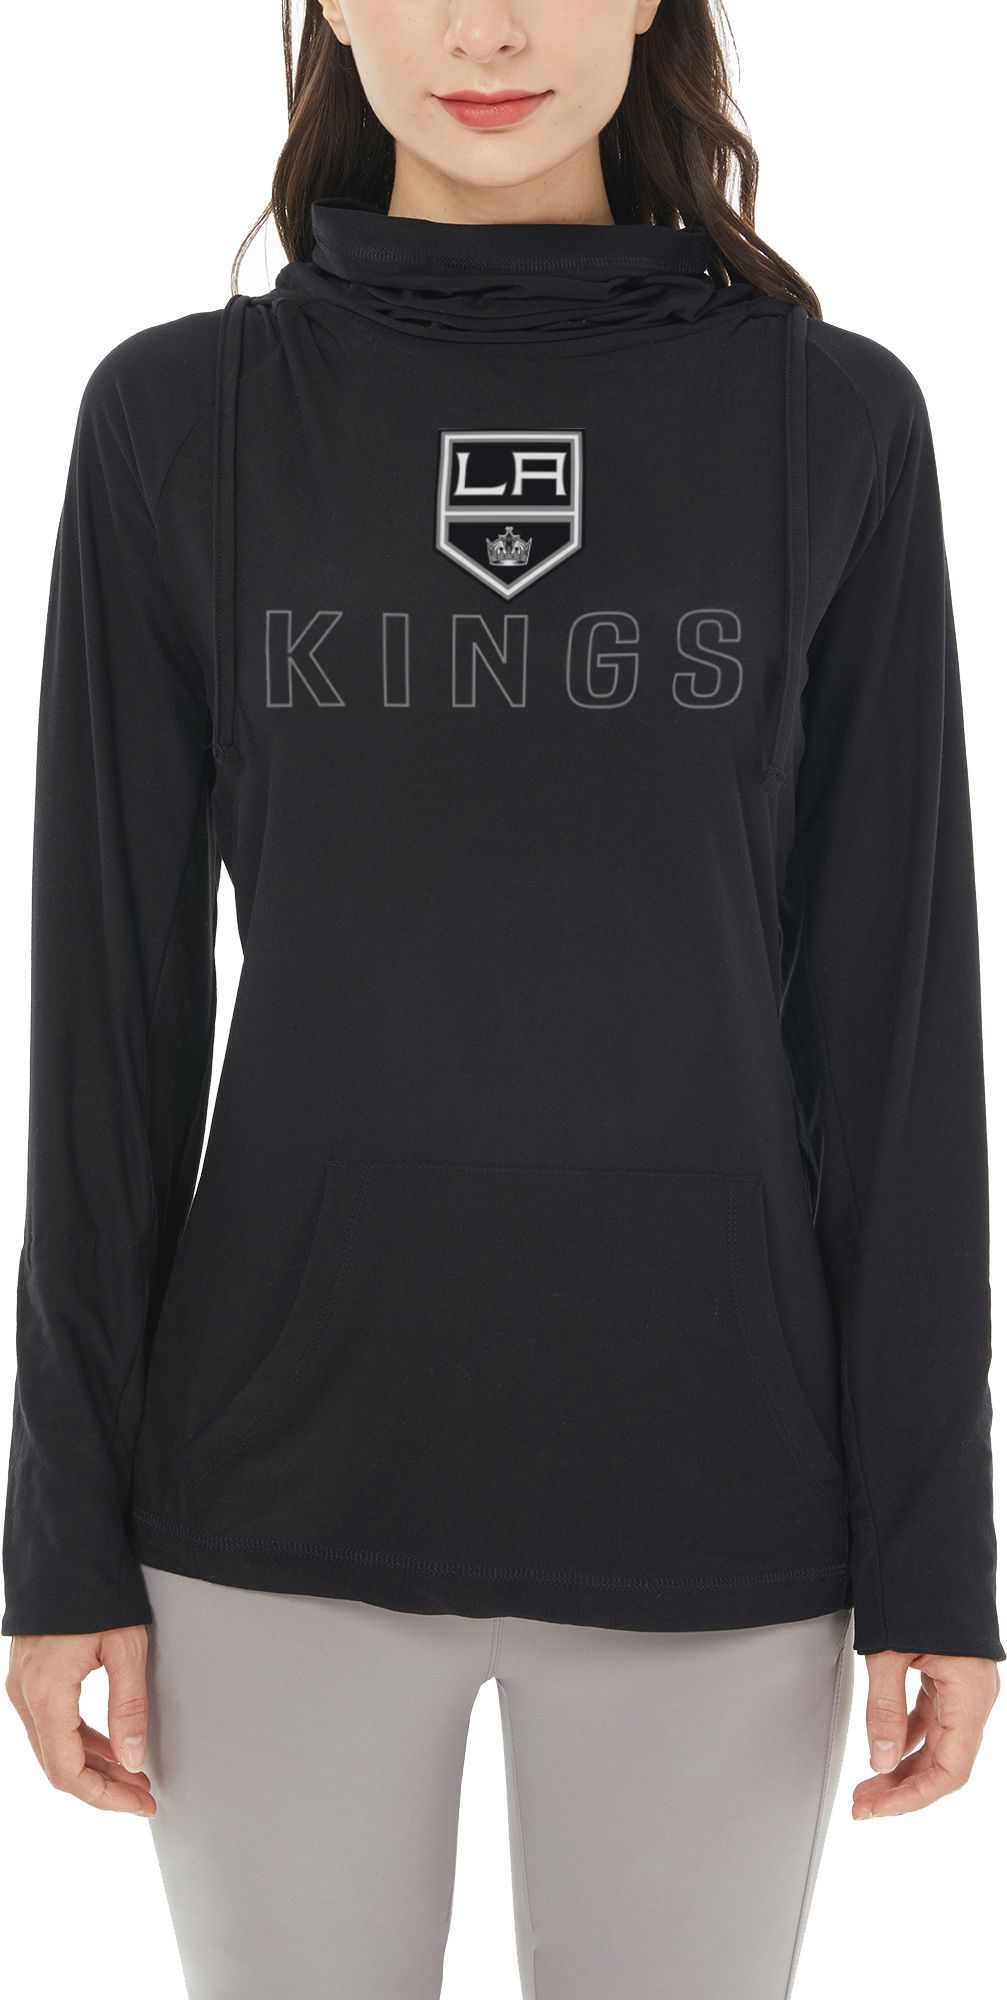 Los Angeles Kings Apparel, Kings Clothing & Gear